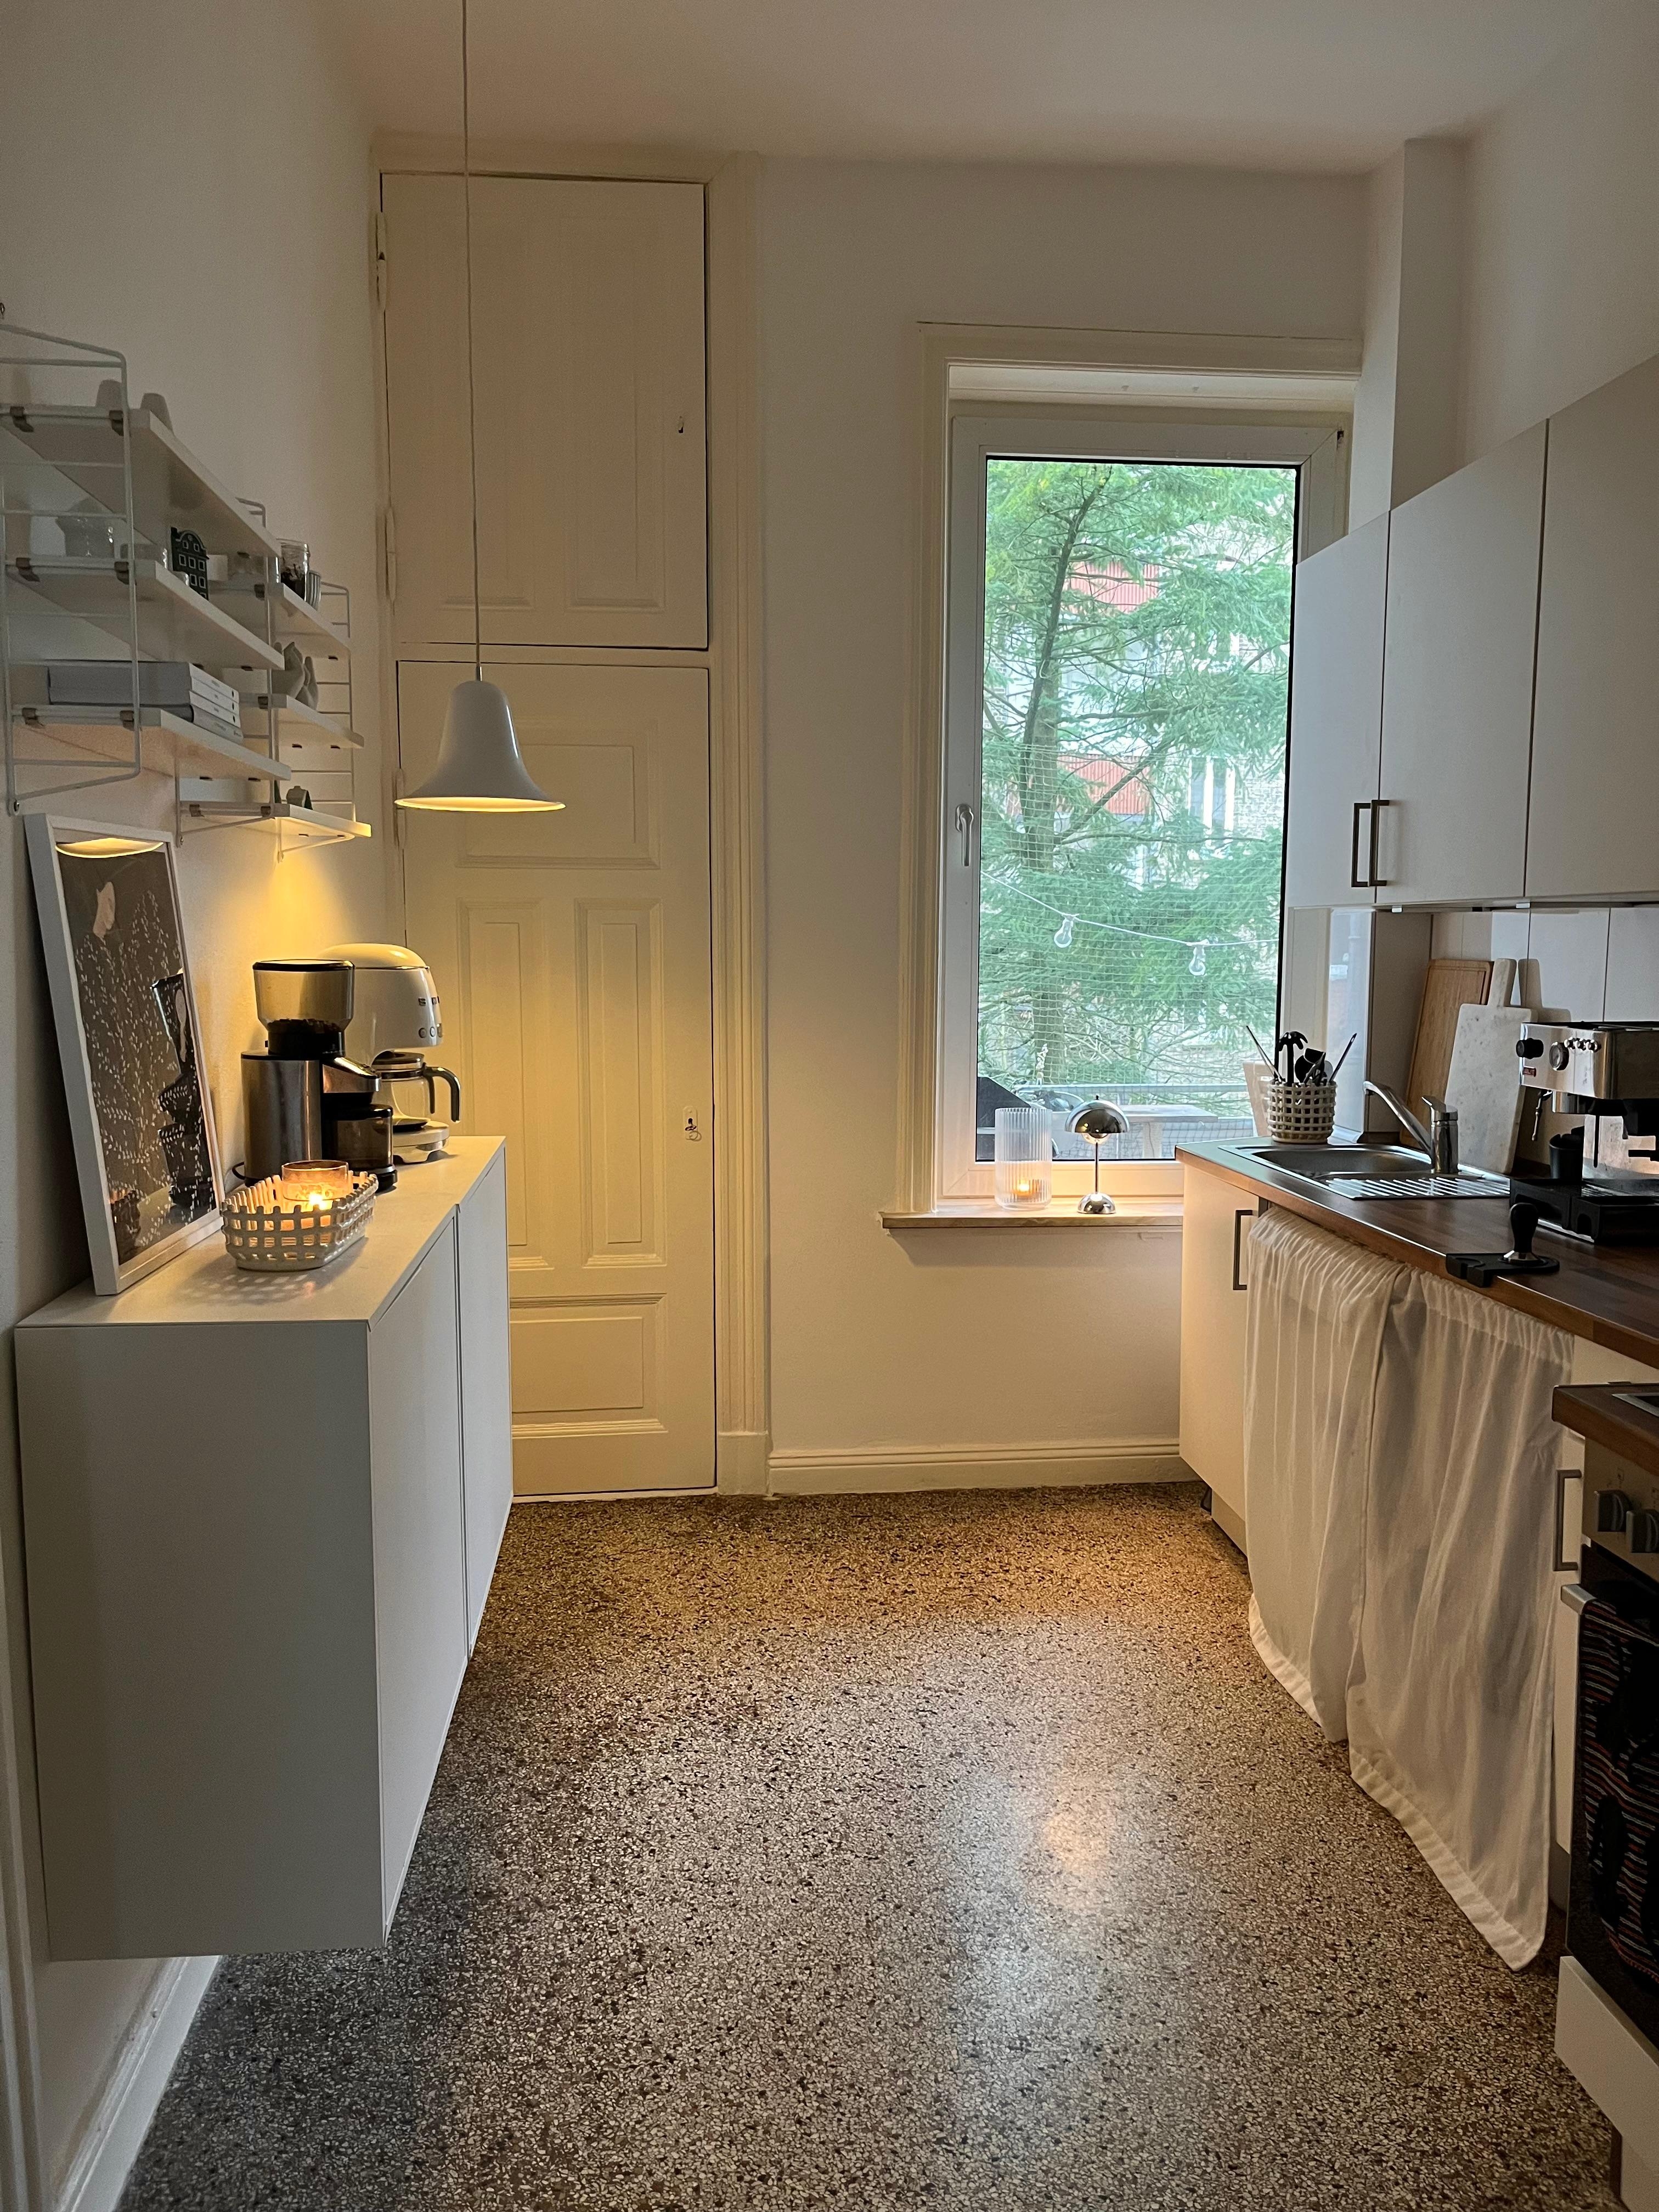 #küche #altbauwohnung #couchliebt #skandinavischwohnen #danishdesign